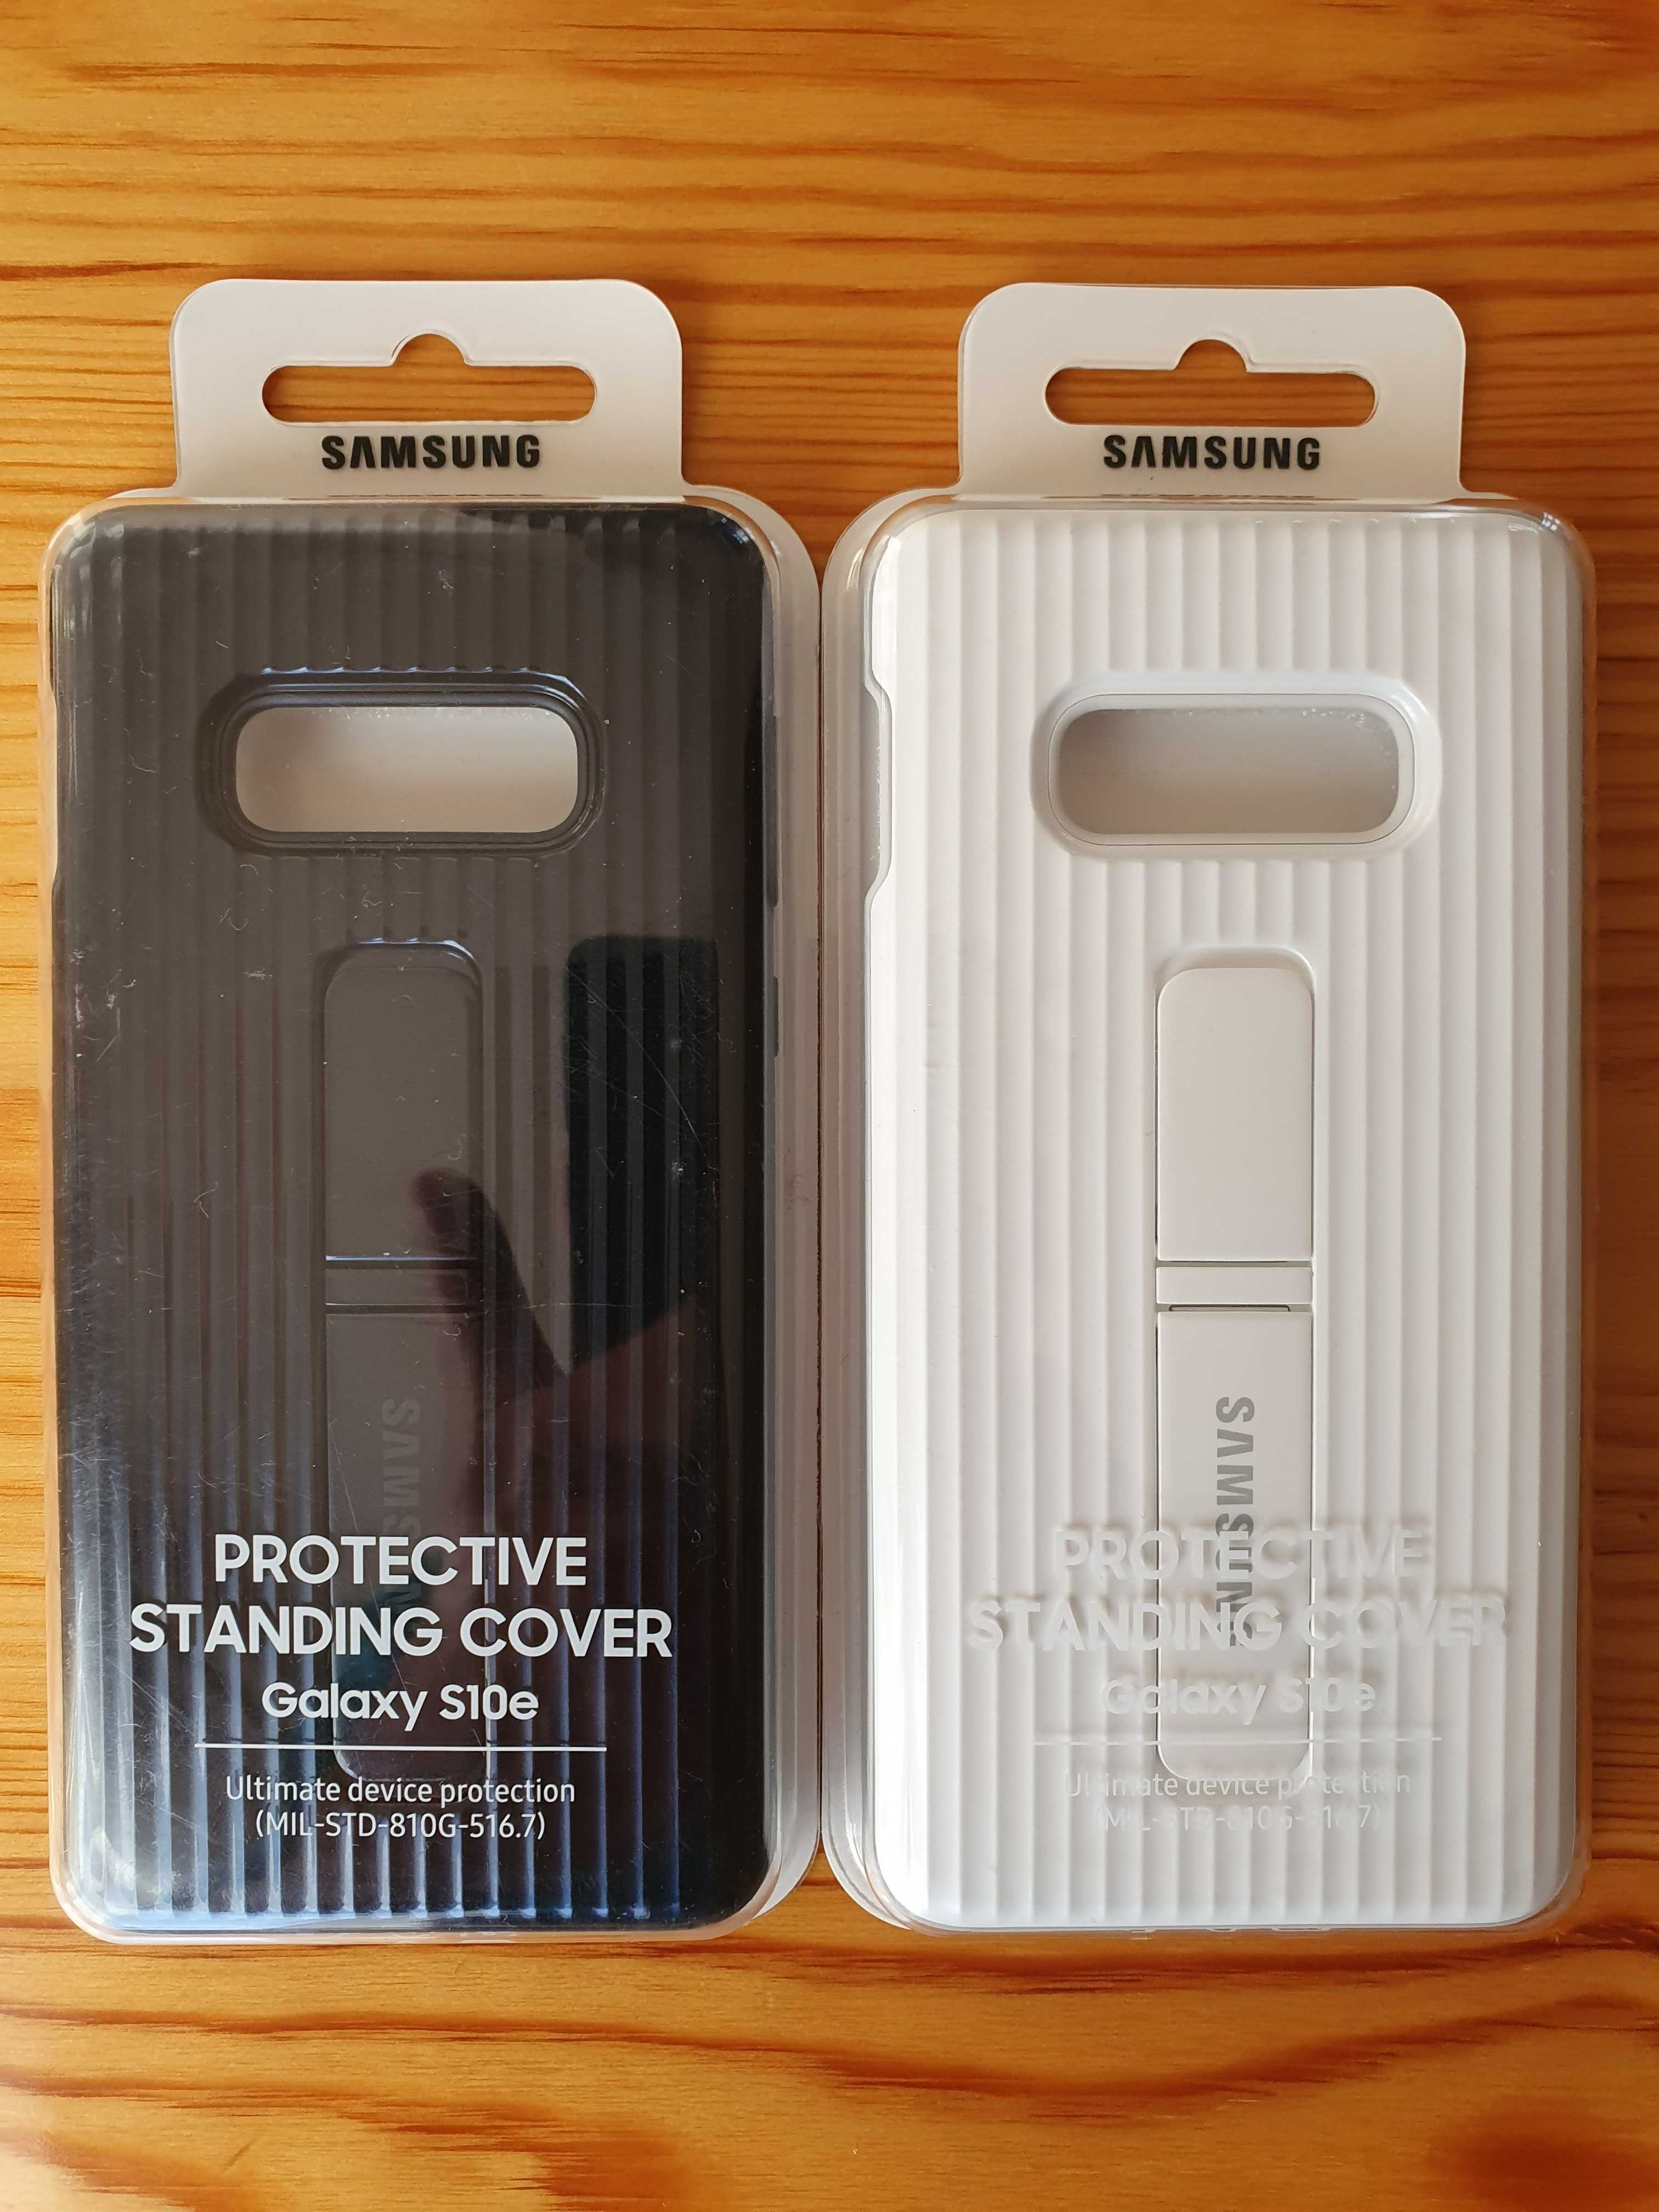 Новый оригинальный чехол Protective Standing Cover для Samsung S10e.